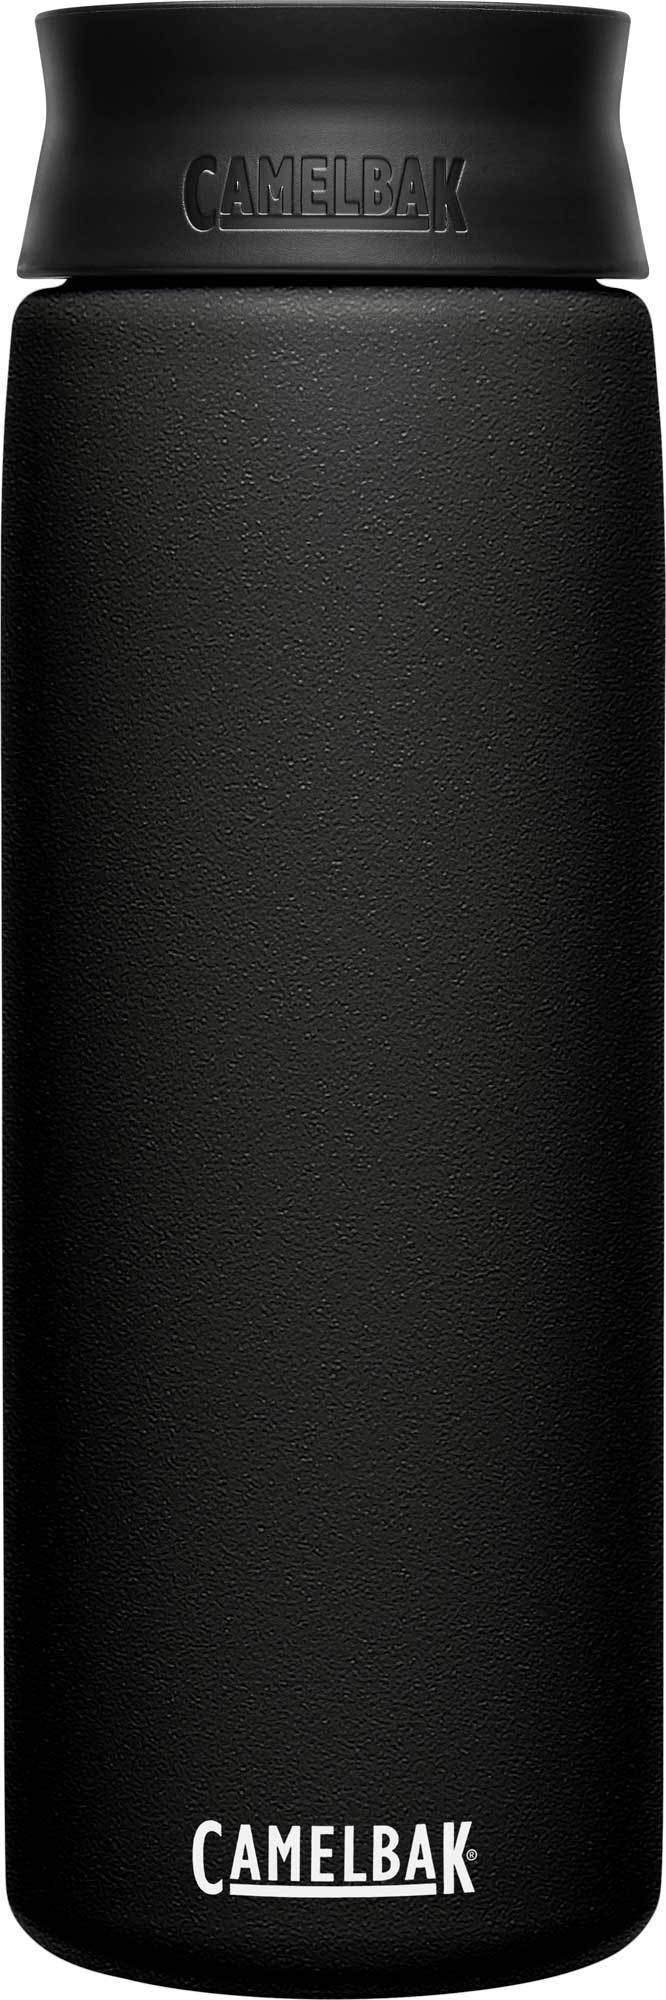 фото Термокружка camelbak hot cap (0,6 литра), черная